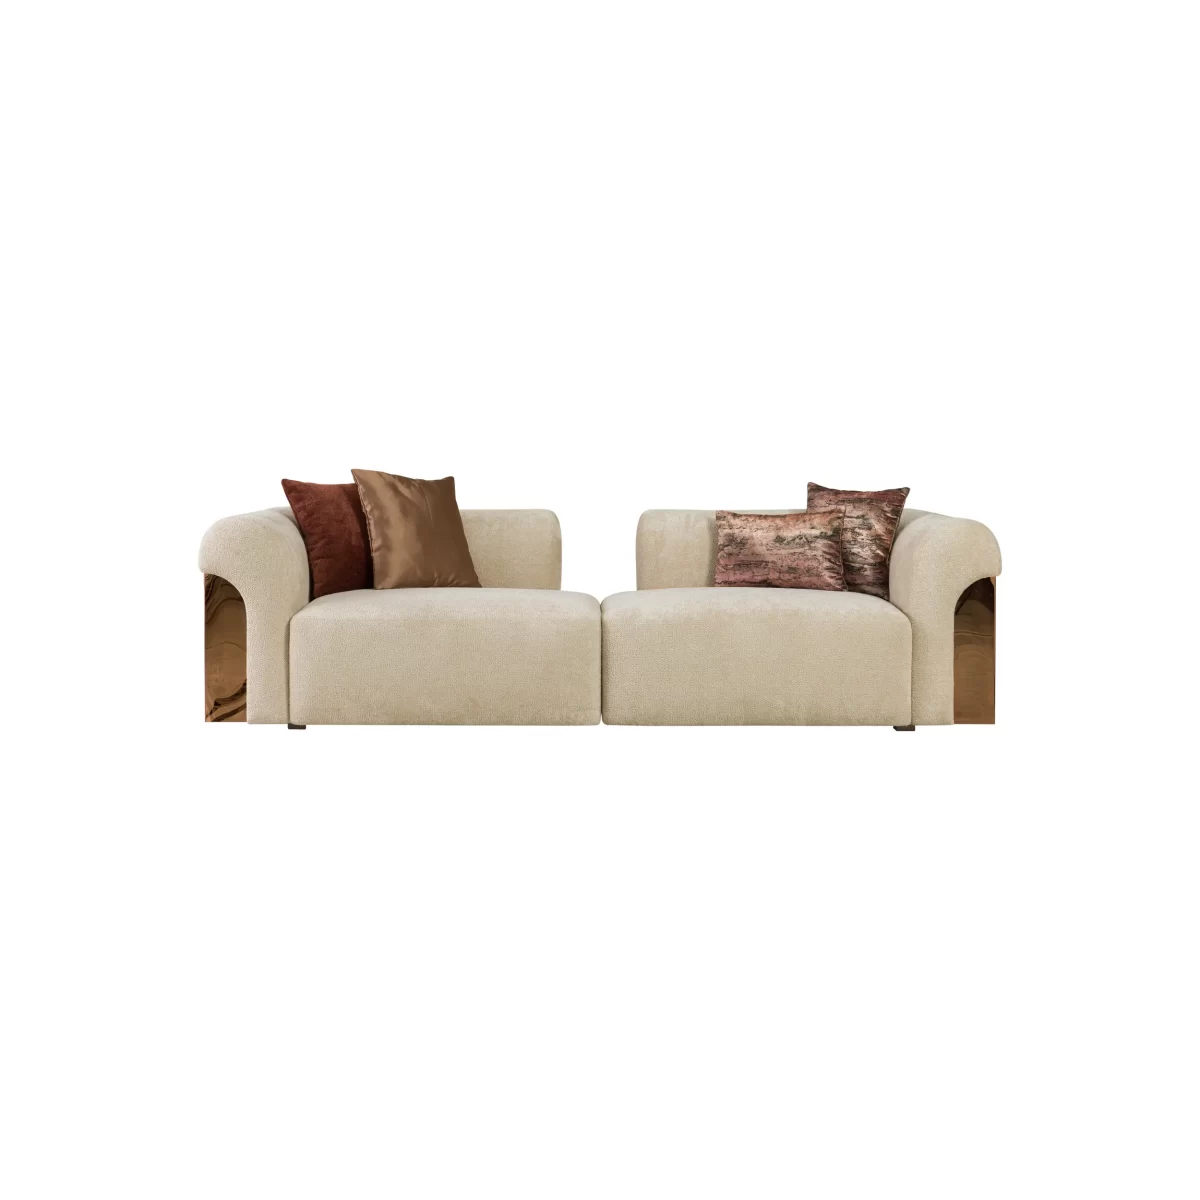 Aerro Sofa Set Premium Living Room Furniture 3